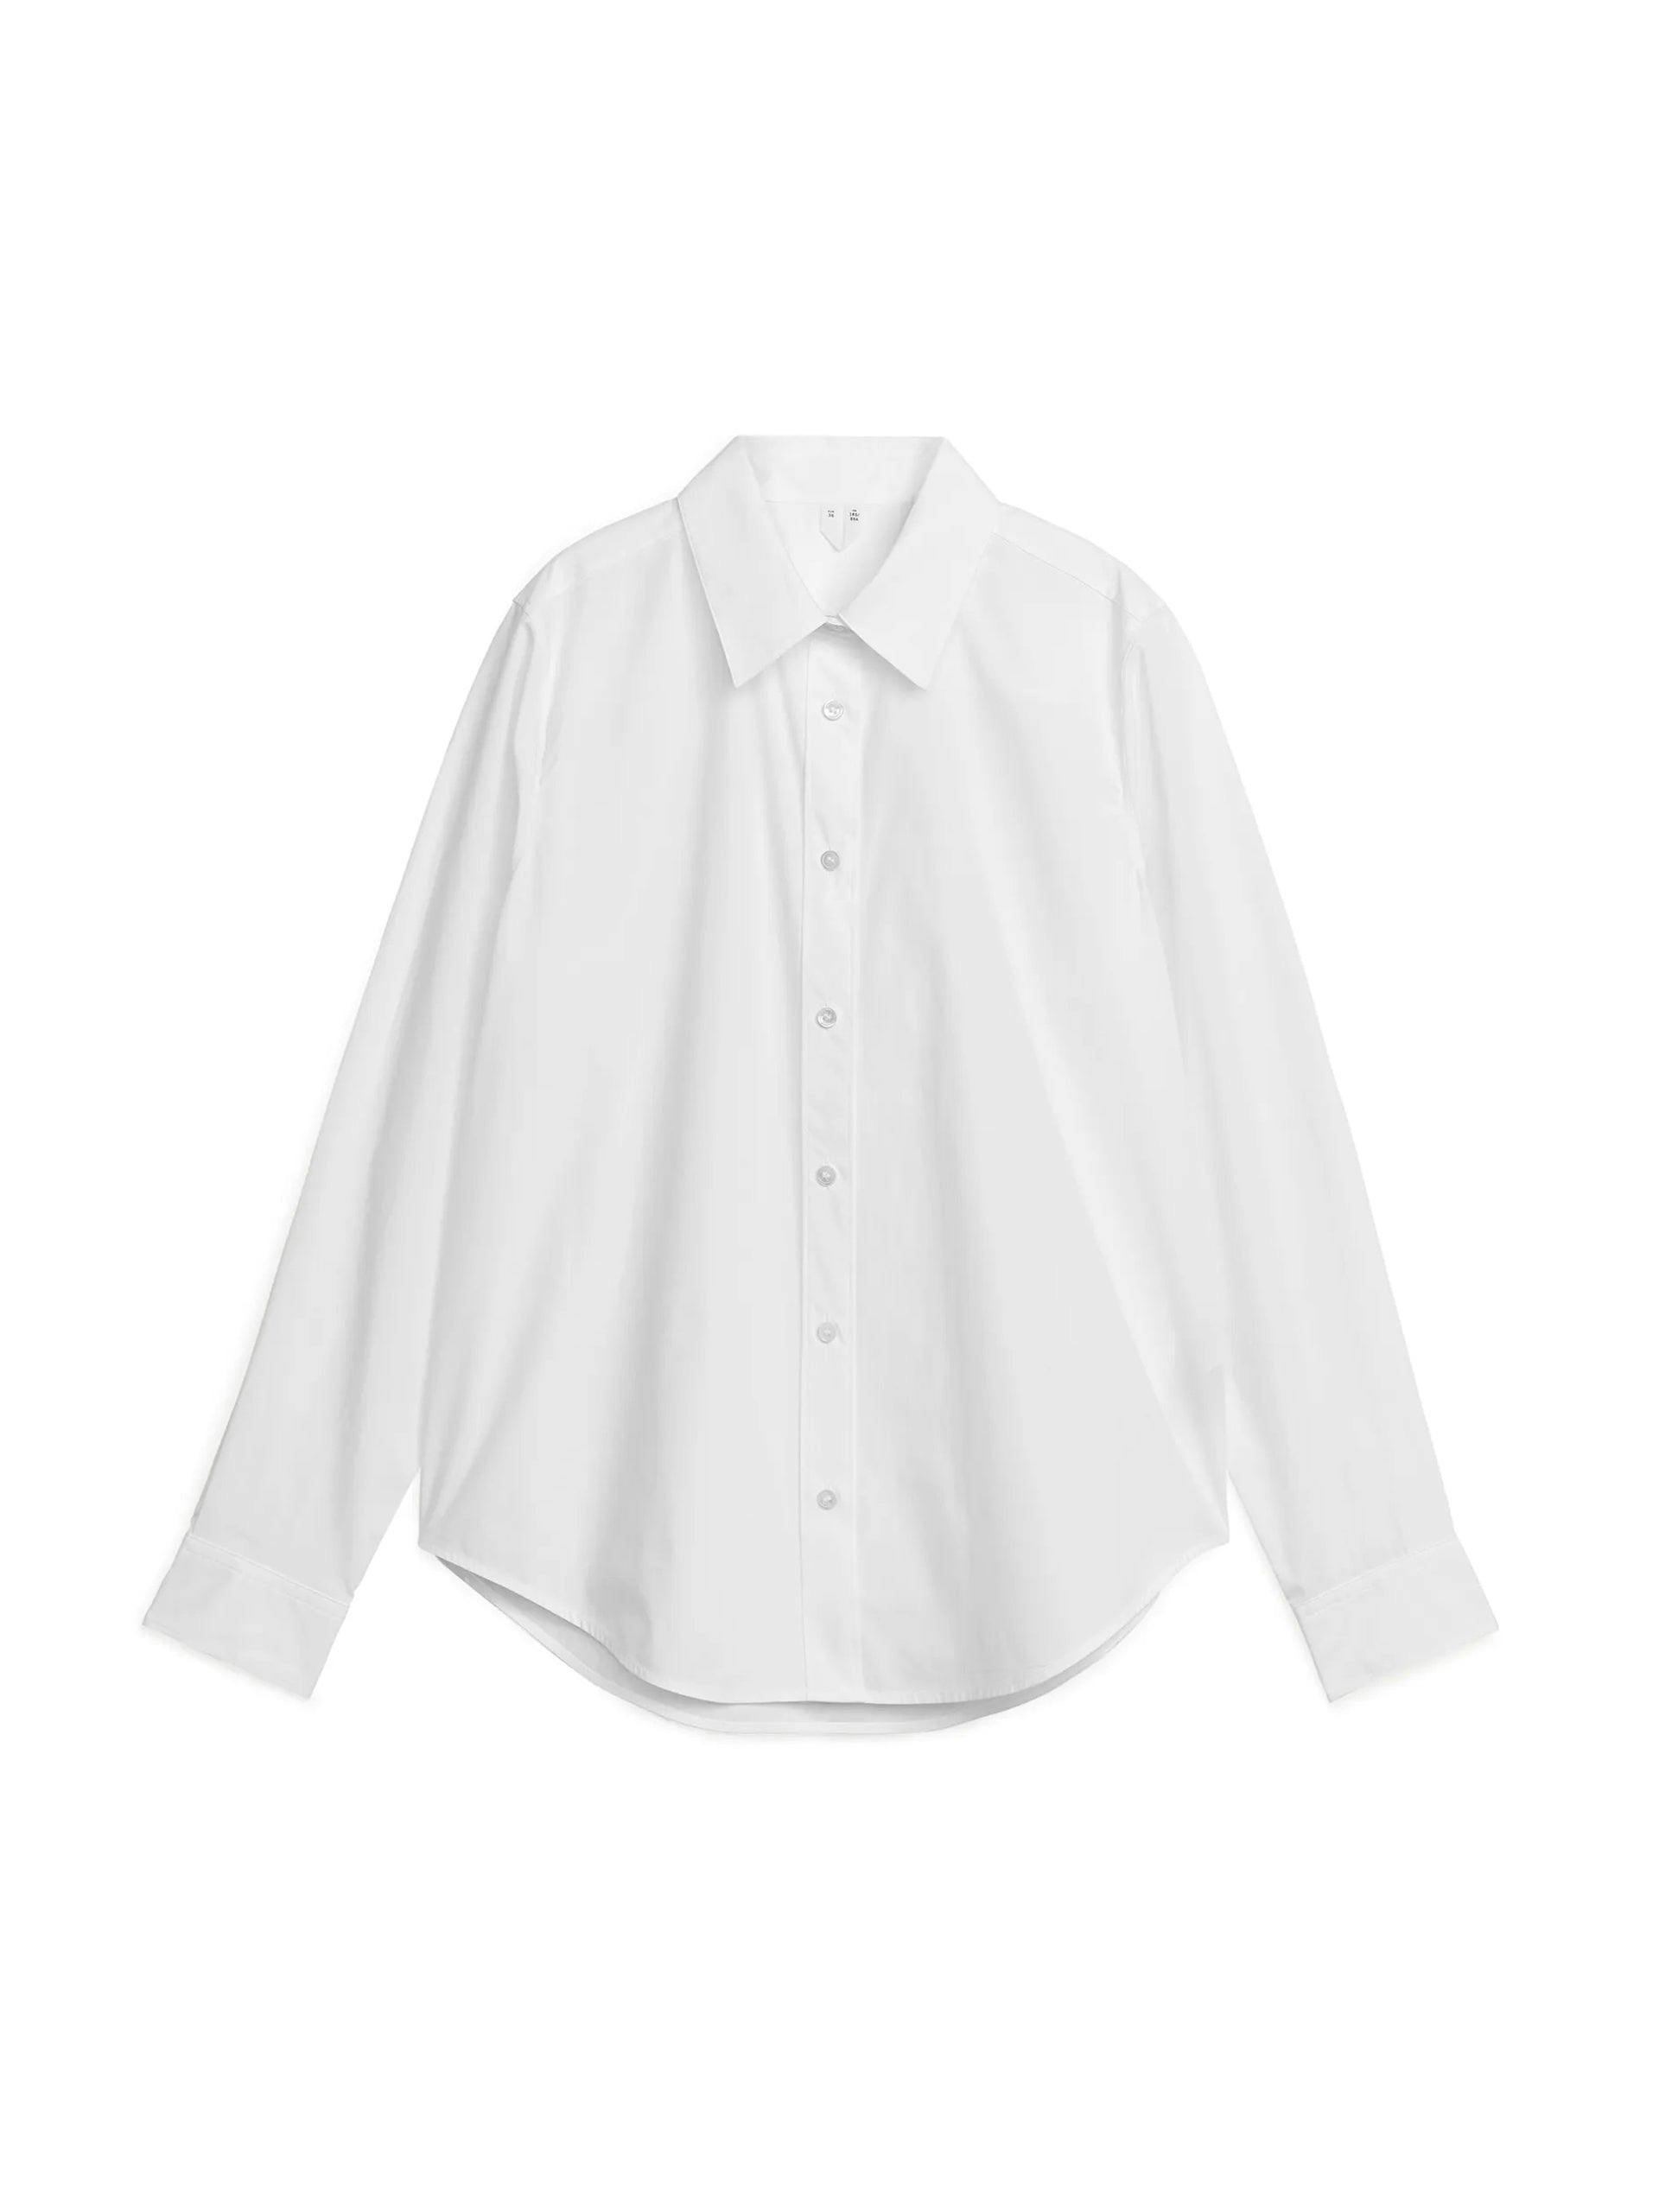 White classic shirt